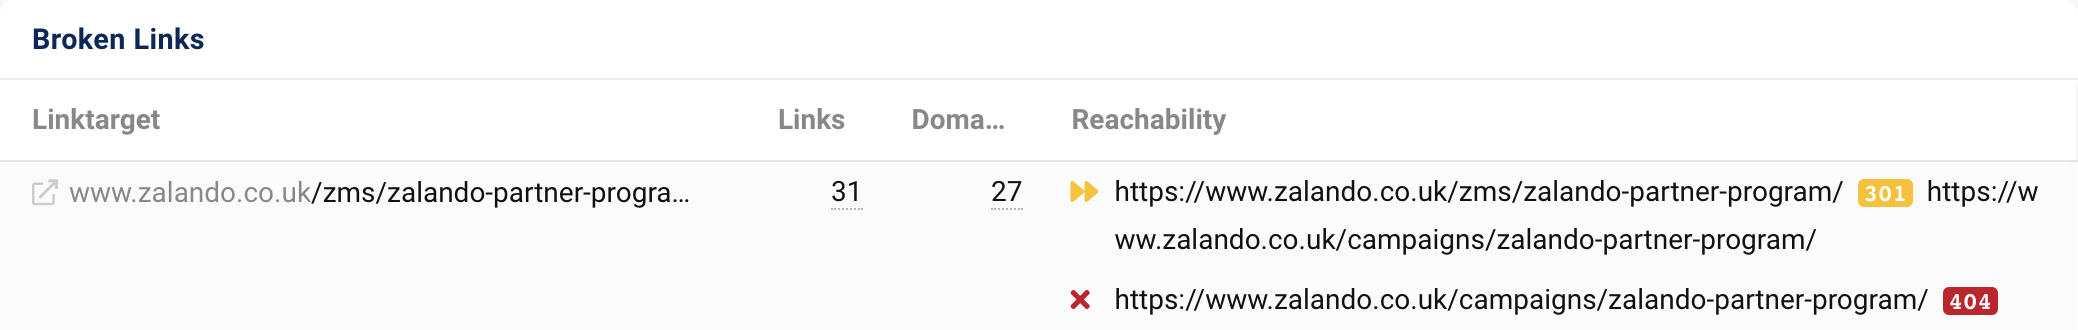 Цель ссылки zalando.co.uk/zms/zalando-partner-program/ получает 31 ссылку из 27 доменов. После перенаправления 301 URL-адрес выводит код состояния 404.